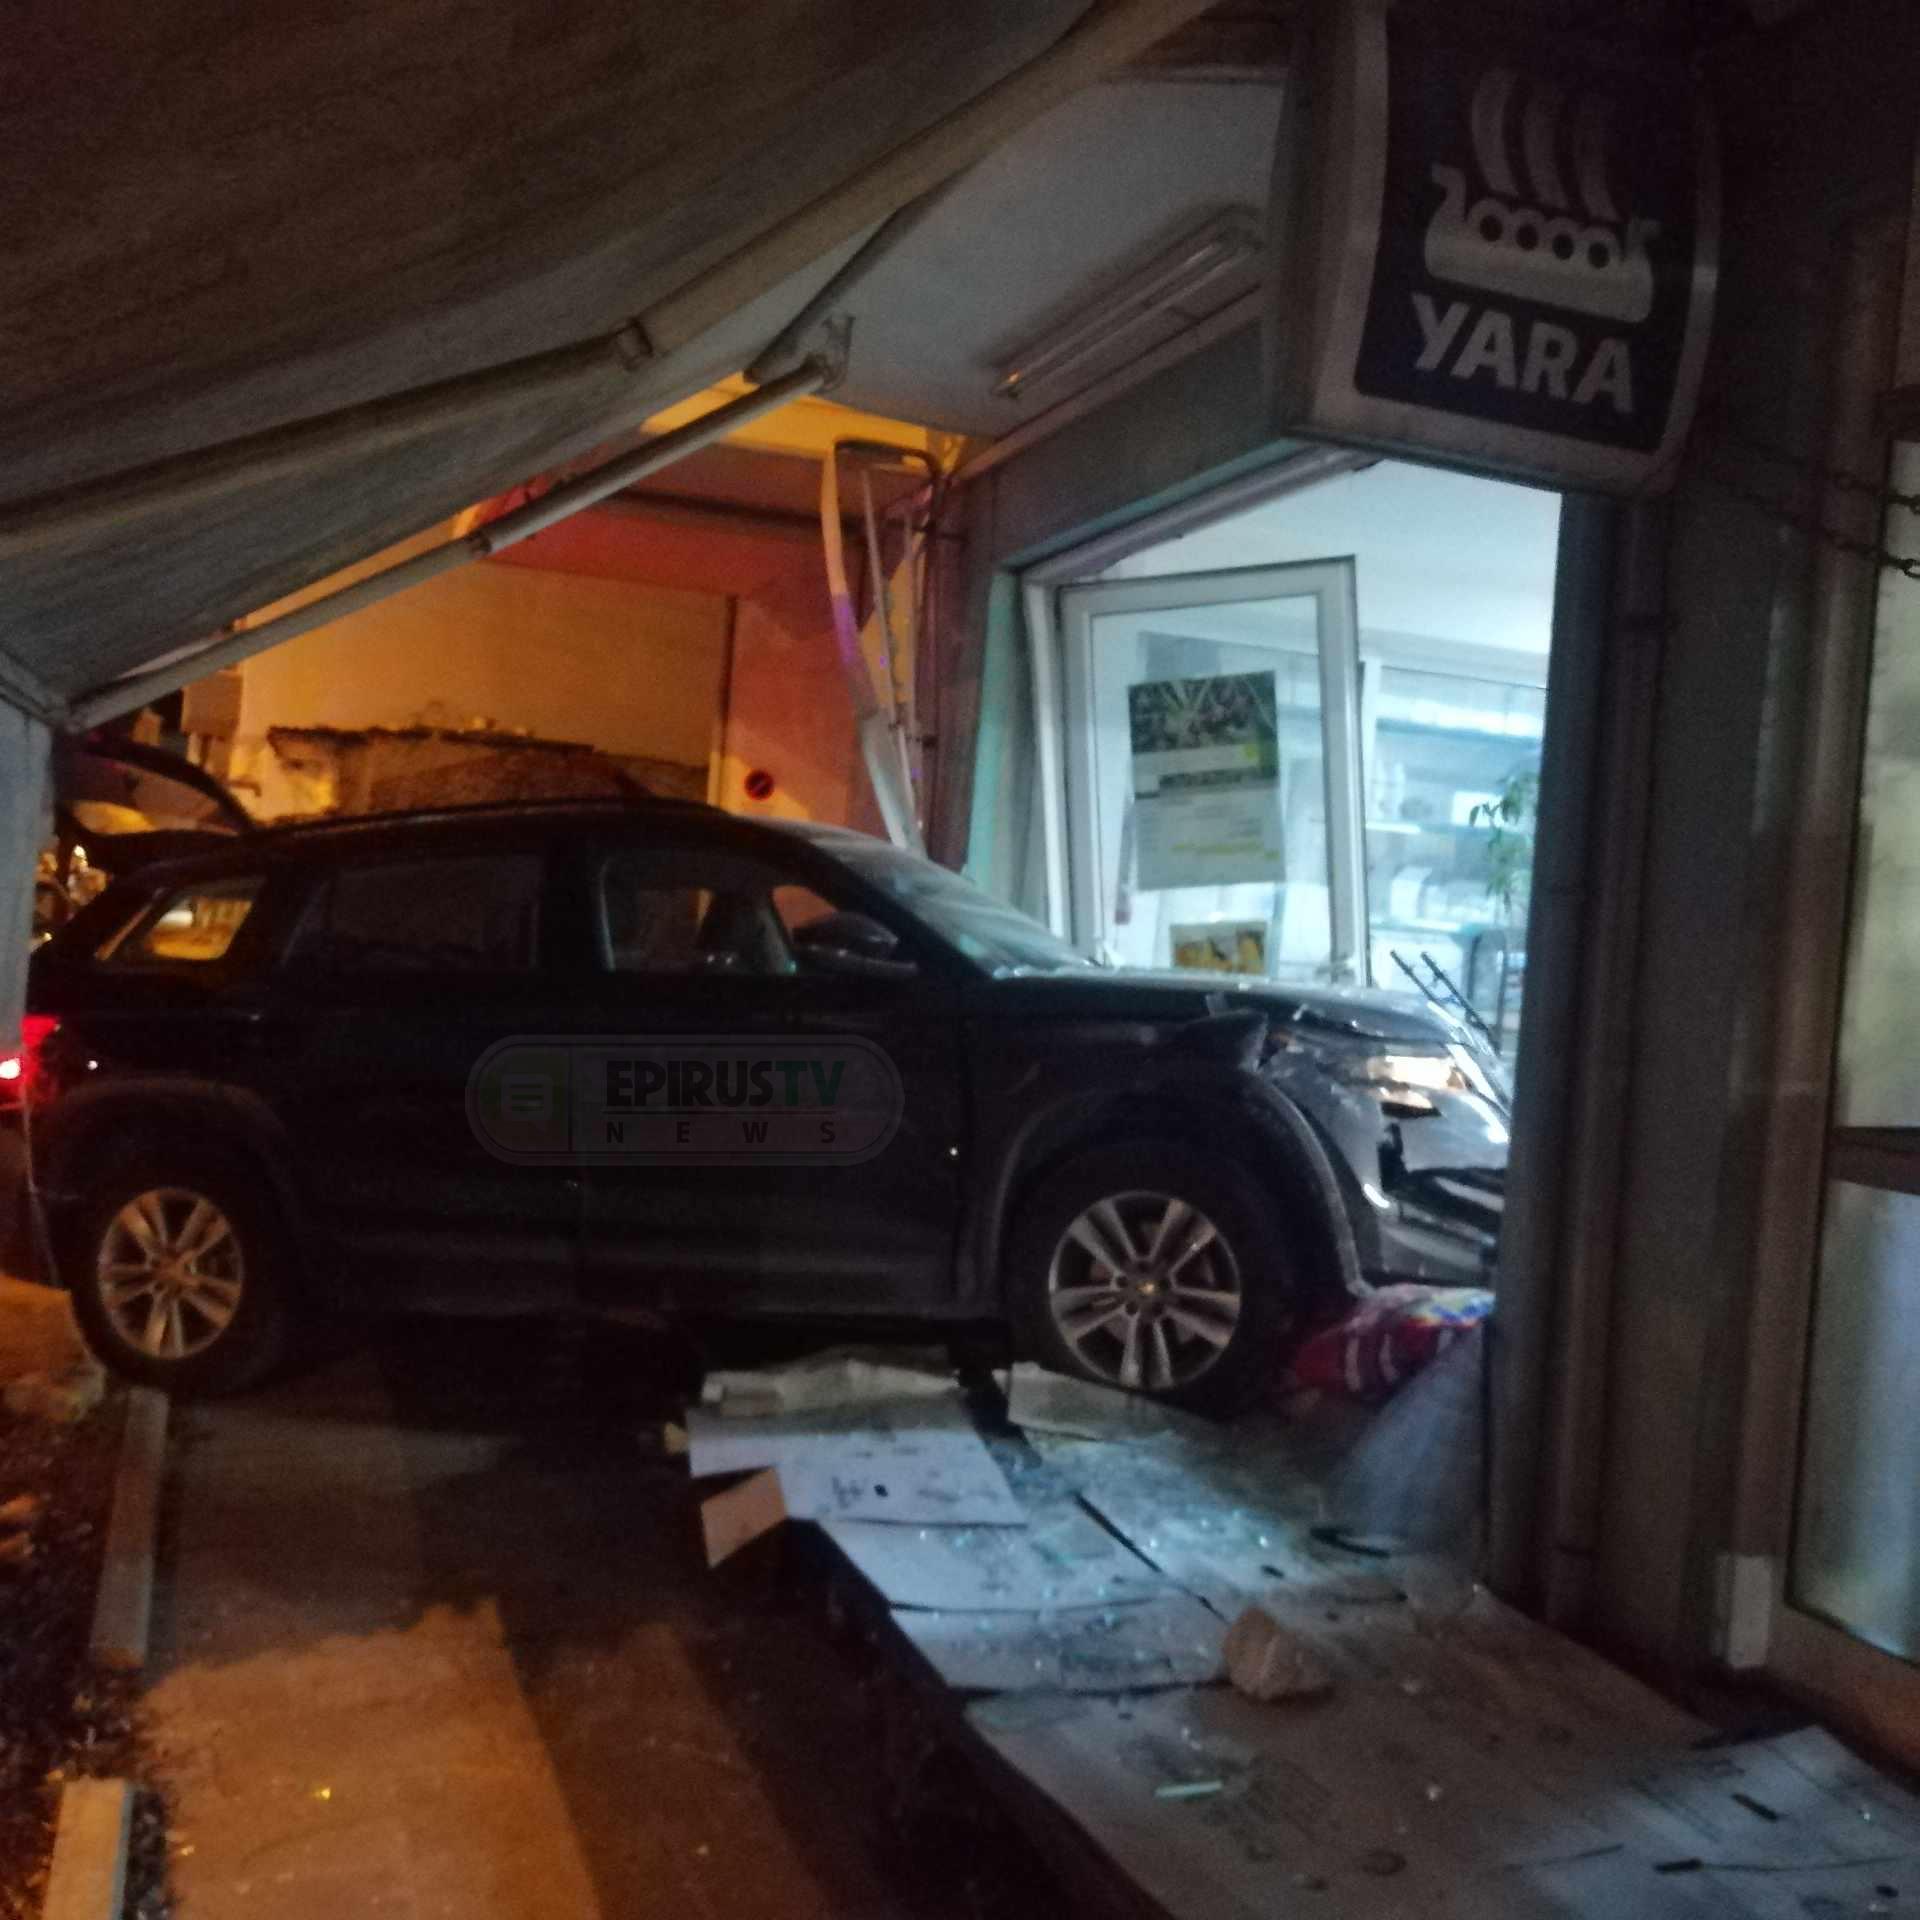 Τρόμος στα Ιωάννινα - Οδηγός έχασε τον έλεγχο του αμαξιού και «καρφώθηκε» σε τζαμαρία καταστήματος